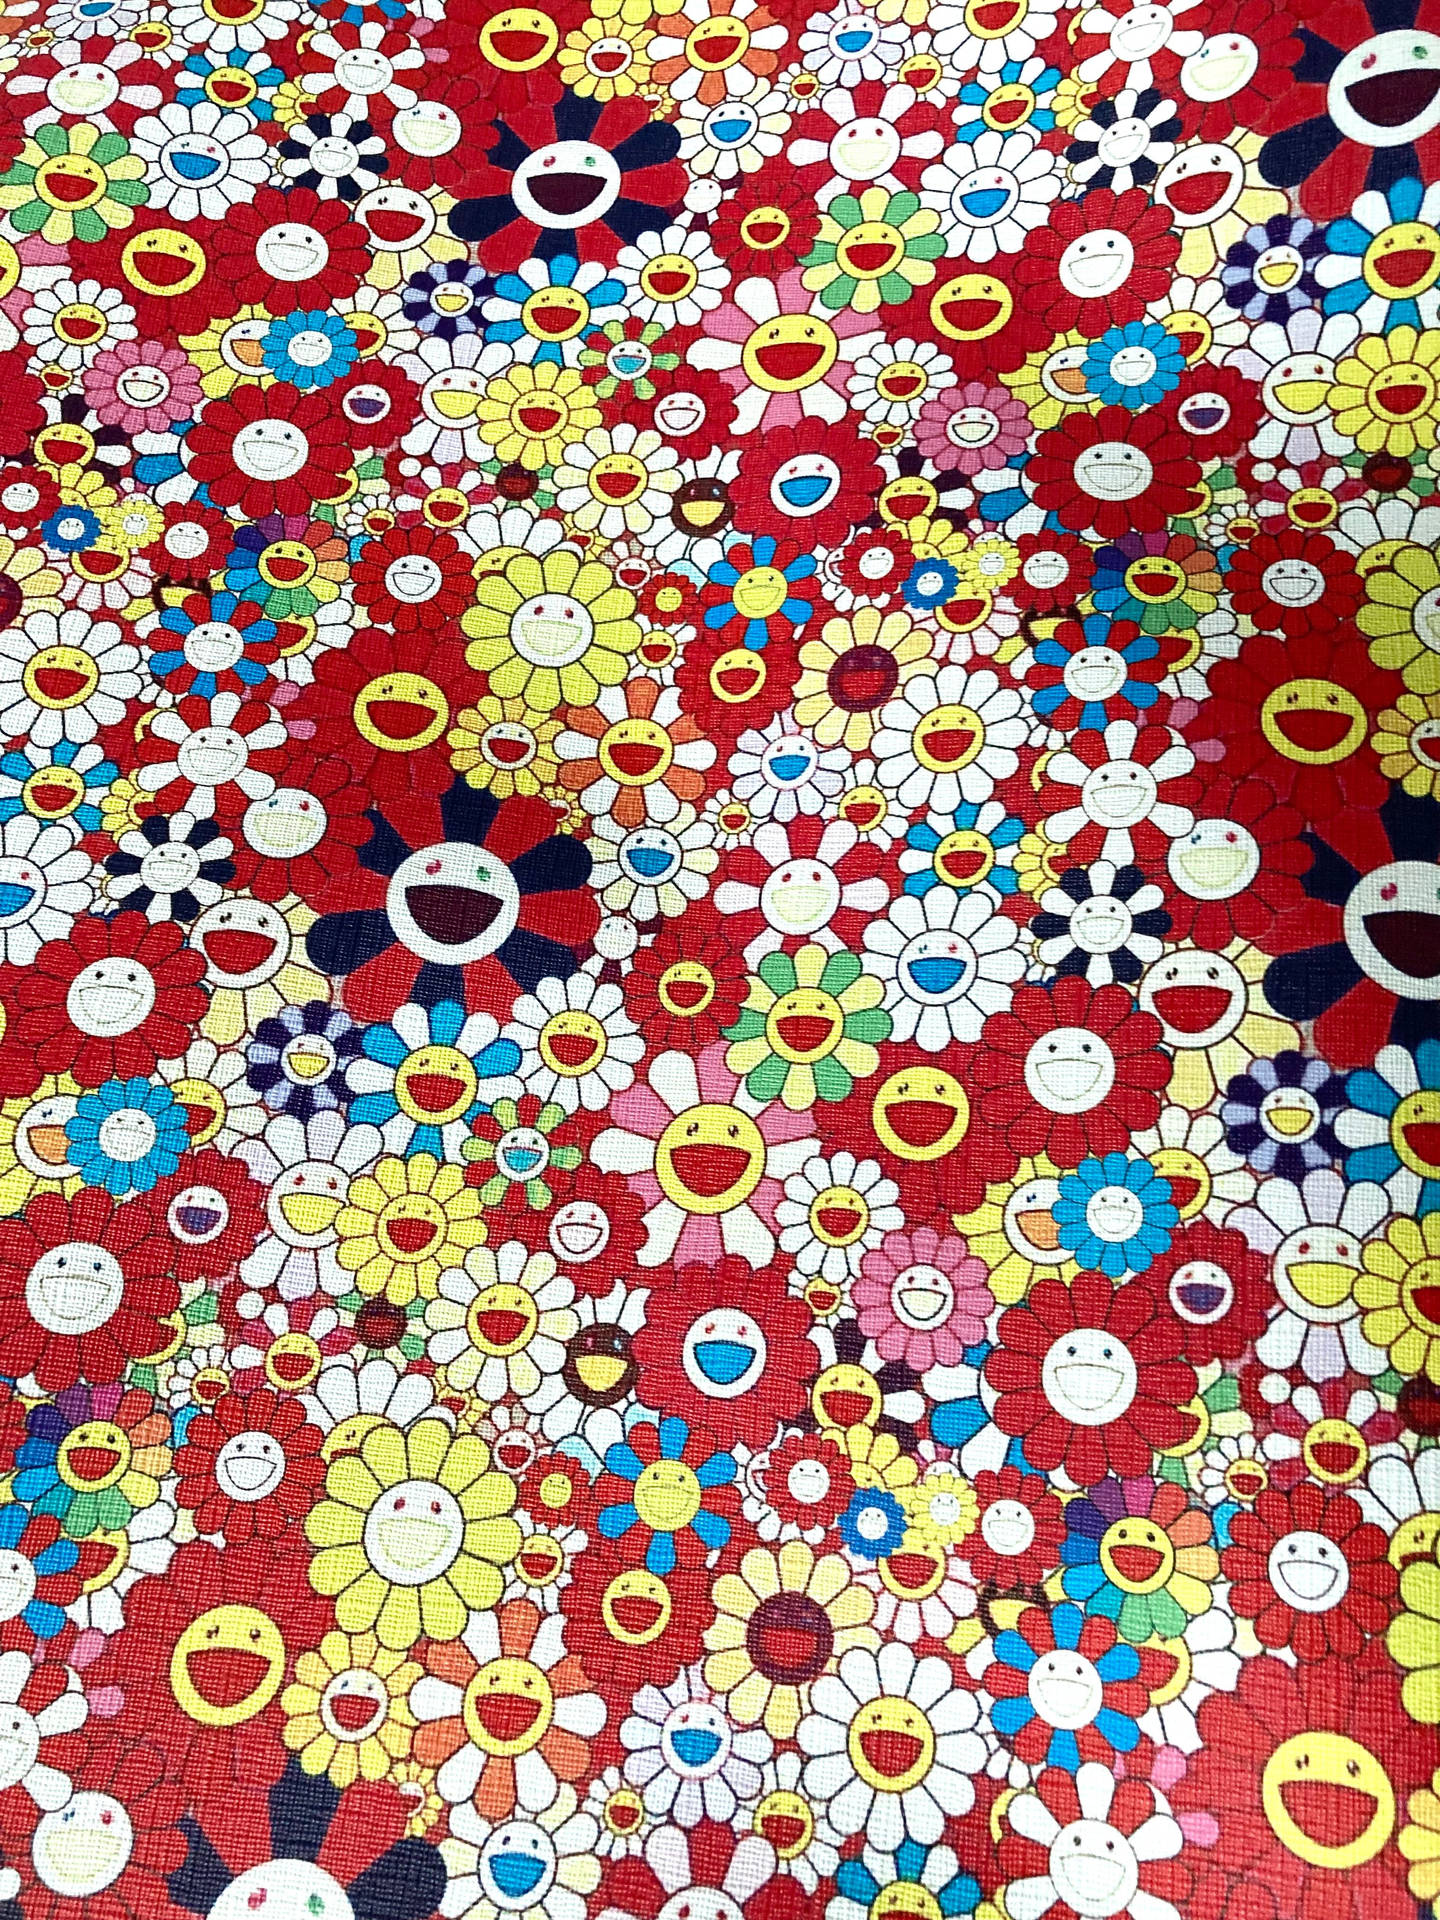 Takashi Murakami Smiley Flowers Wallpaper